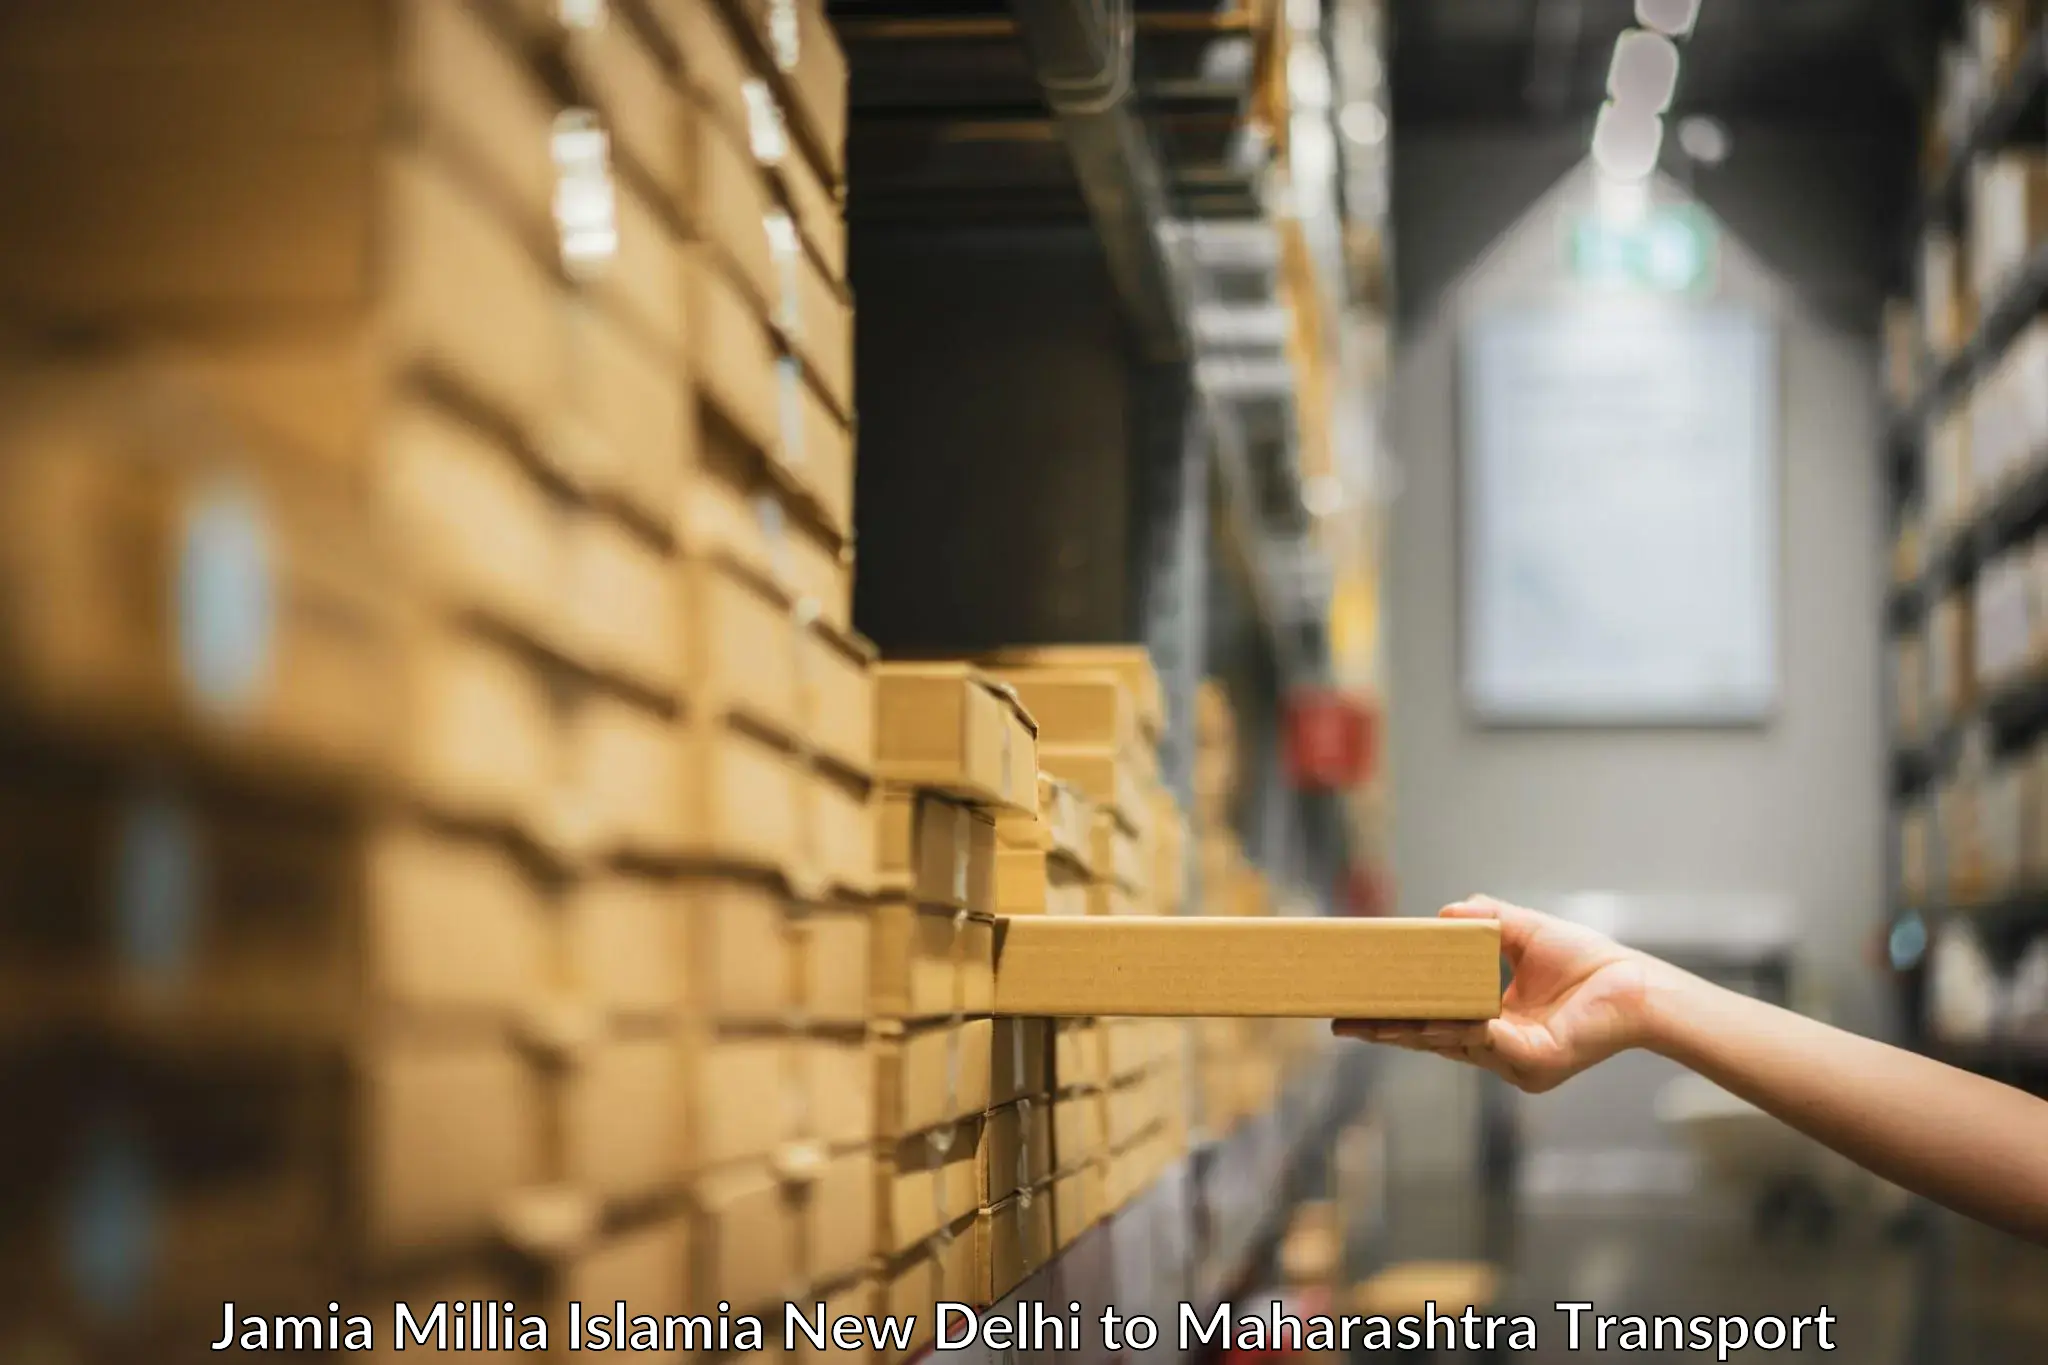 Express transport services Jamia Millia Islamia New Delhi to Talasari